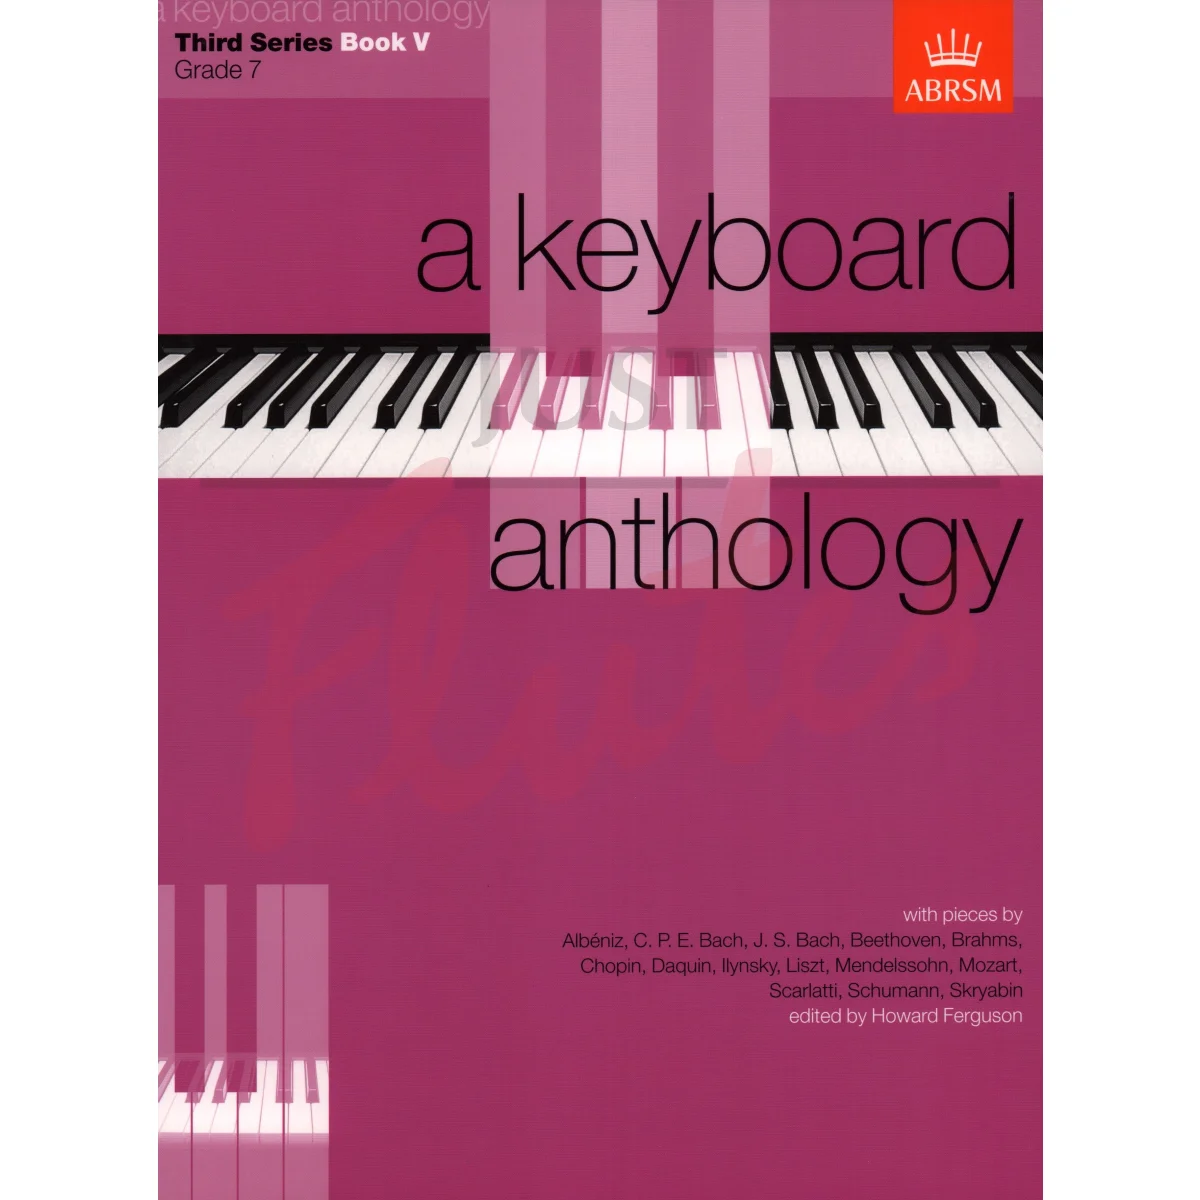 A Keyboard Anthology: Third Series Book 5